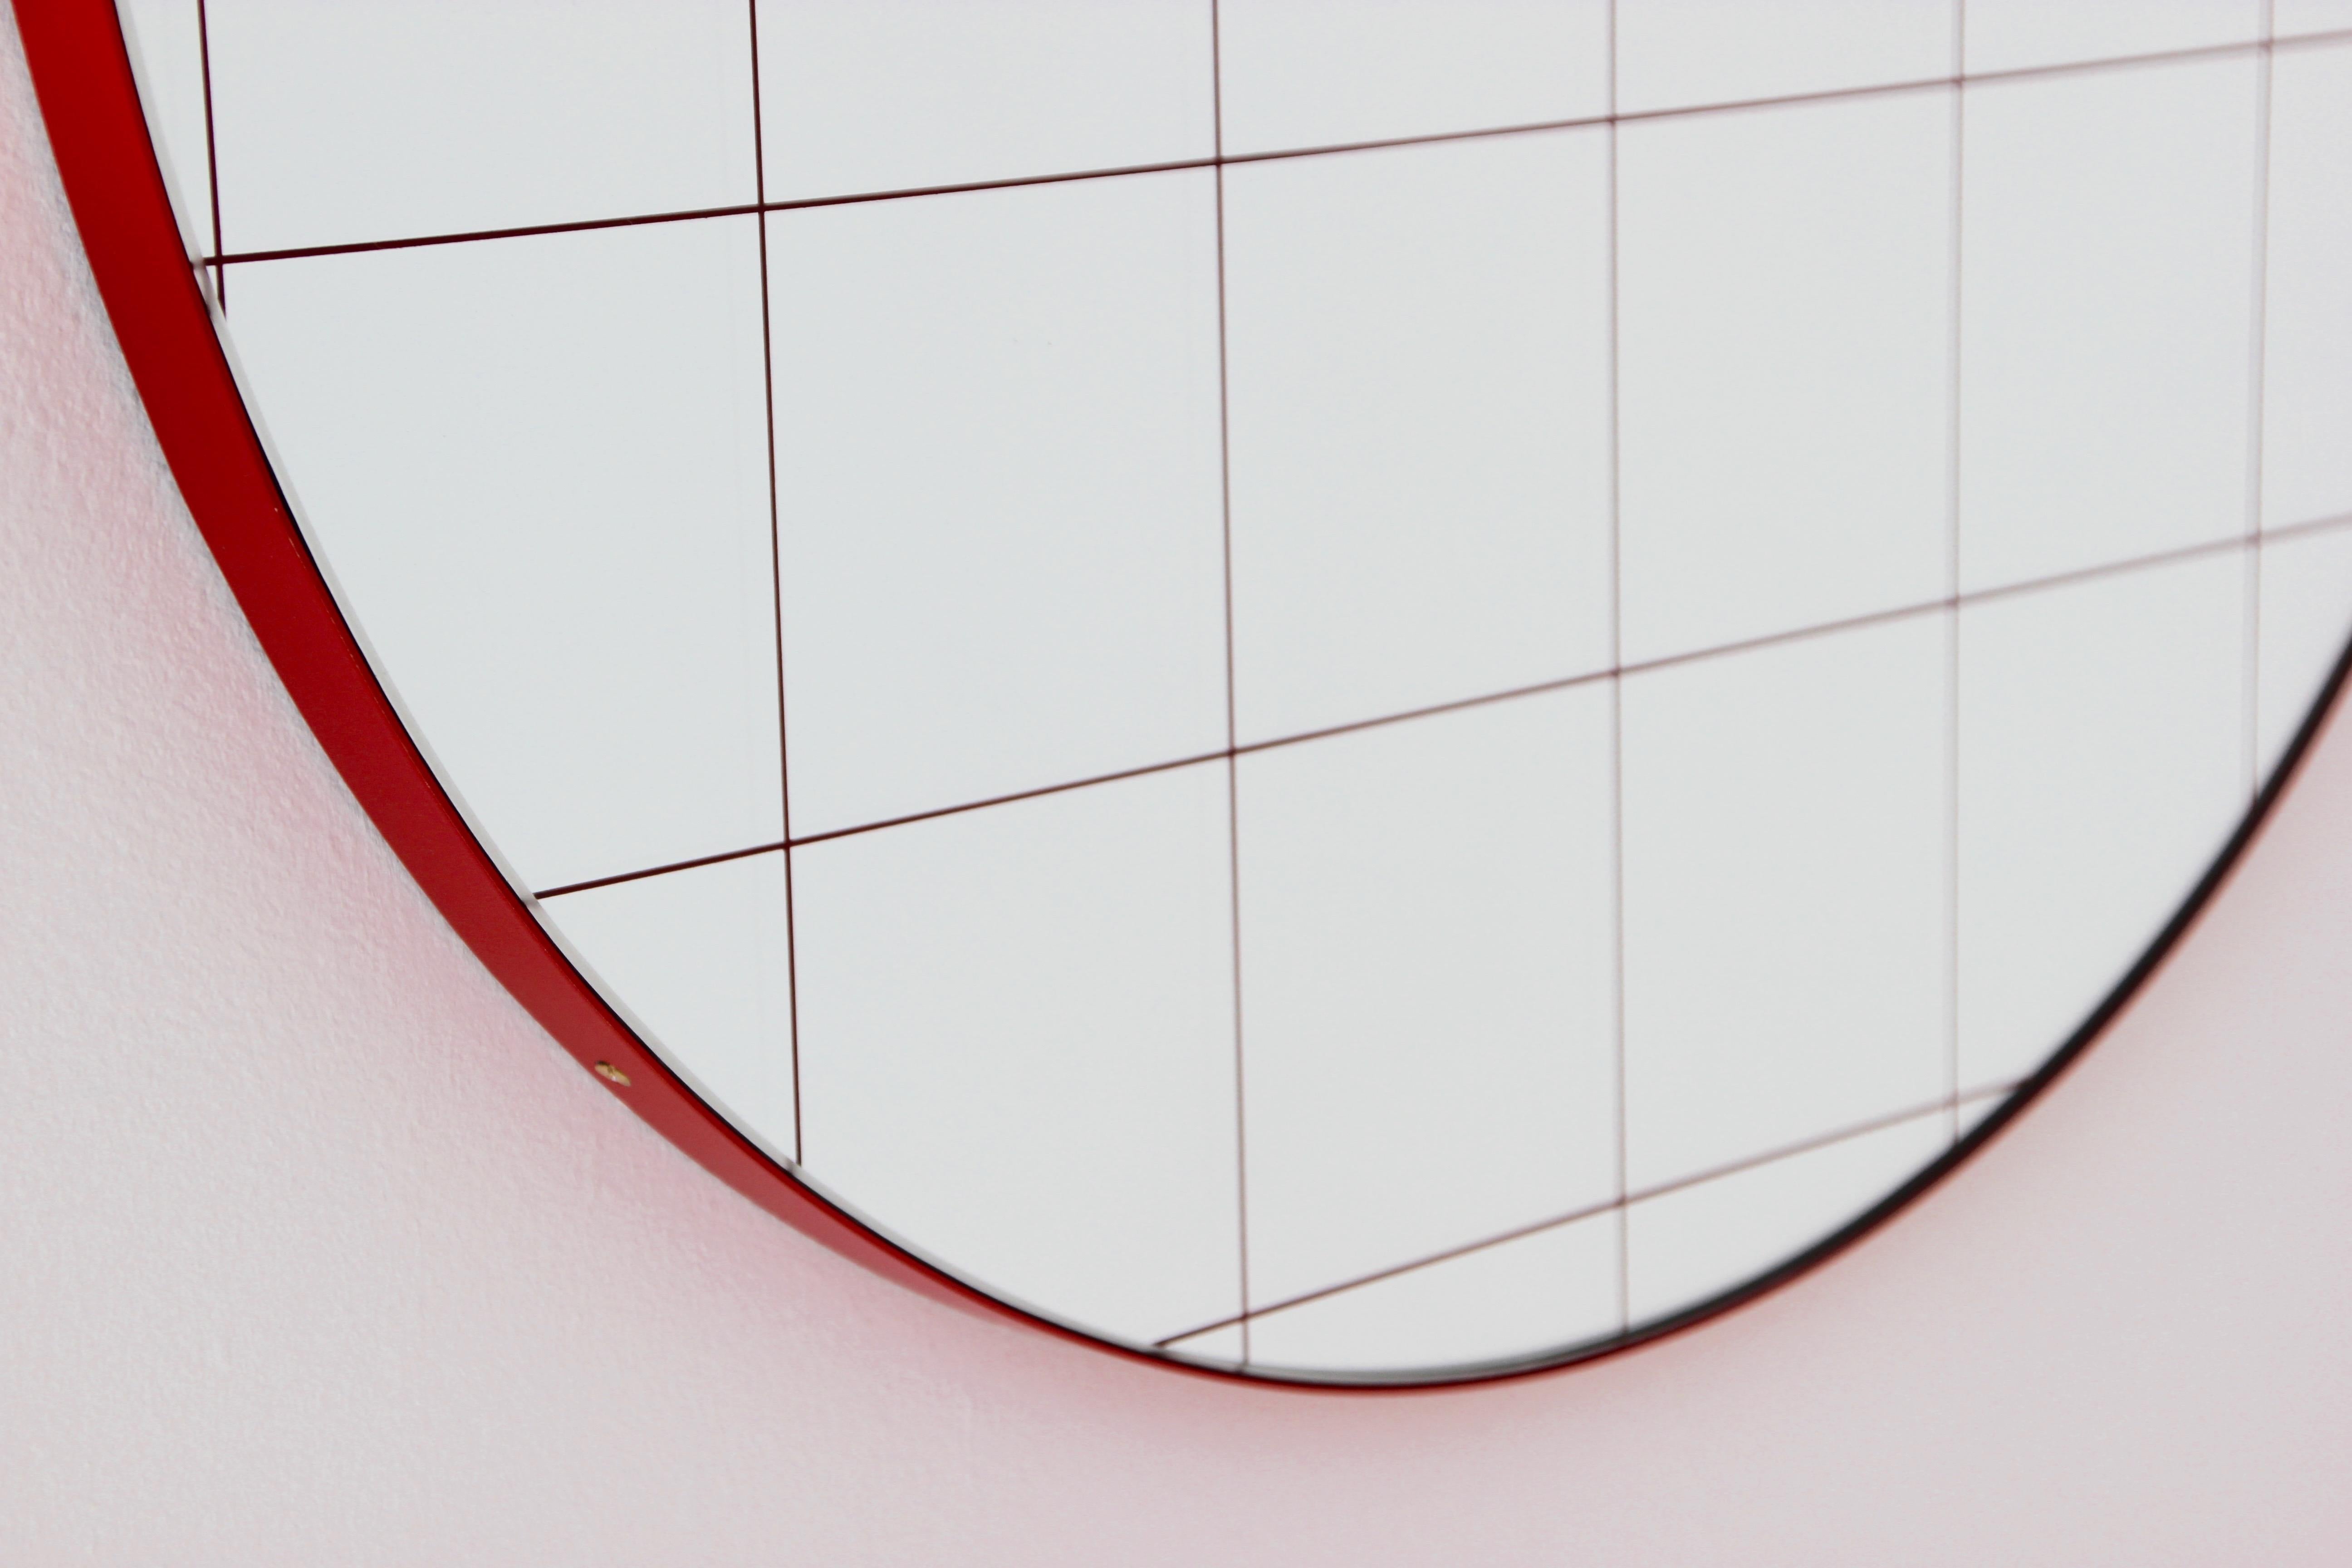 Orbis Red Grid Round Modern Sandblasted Mirror with Red Frame, Medium 2